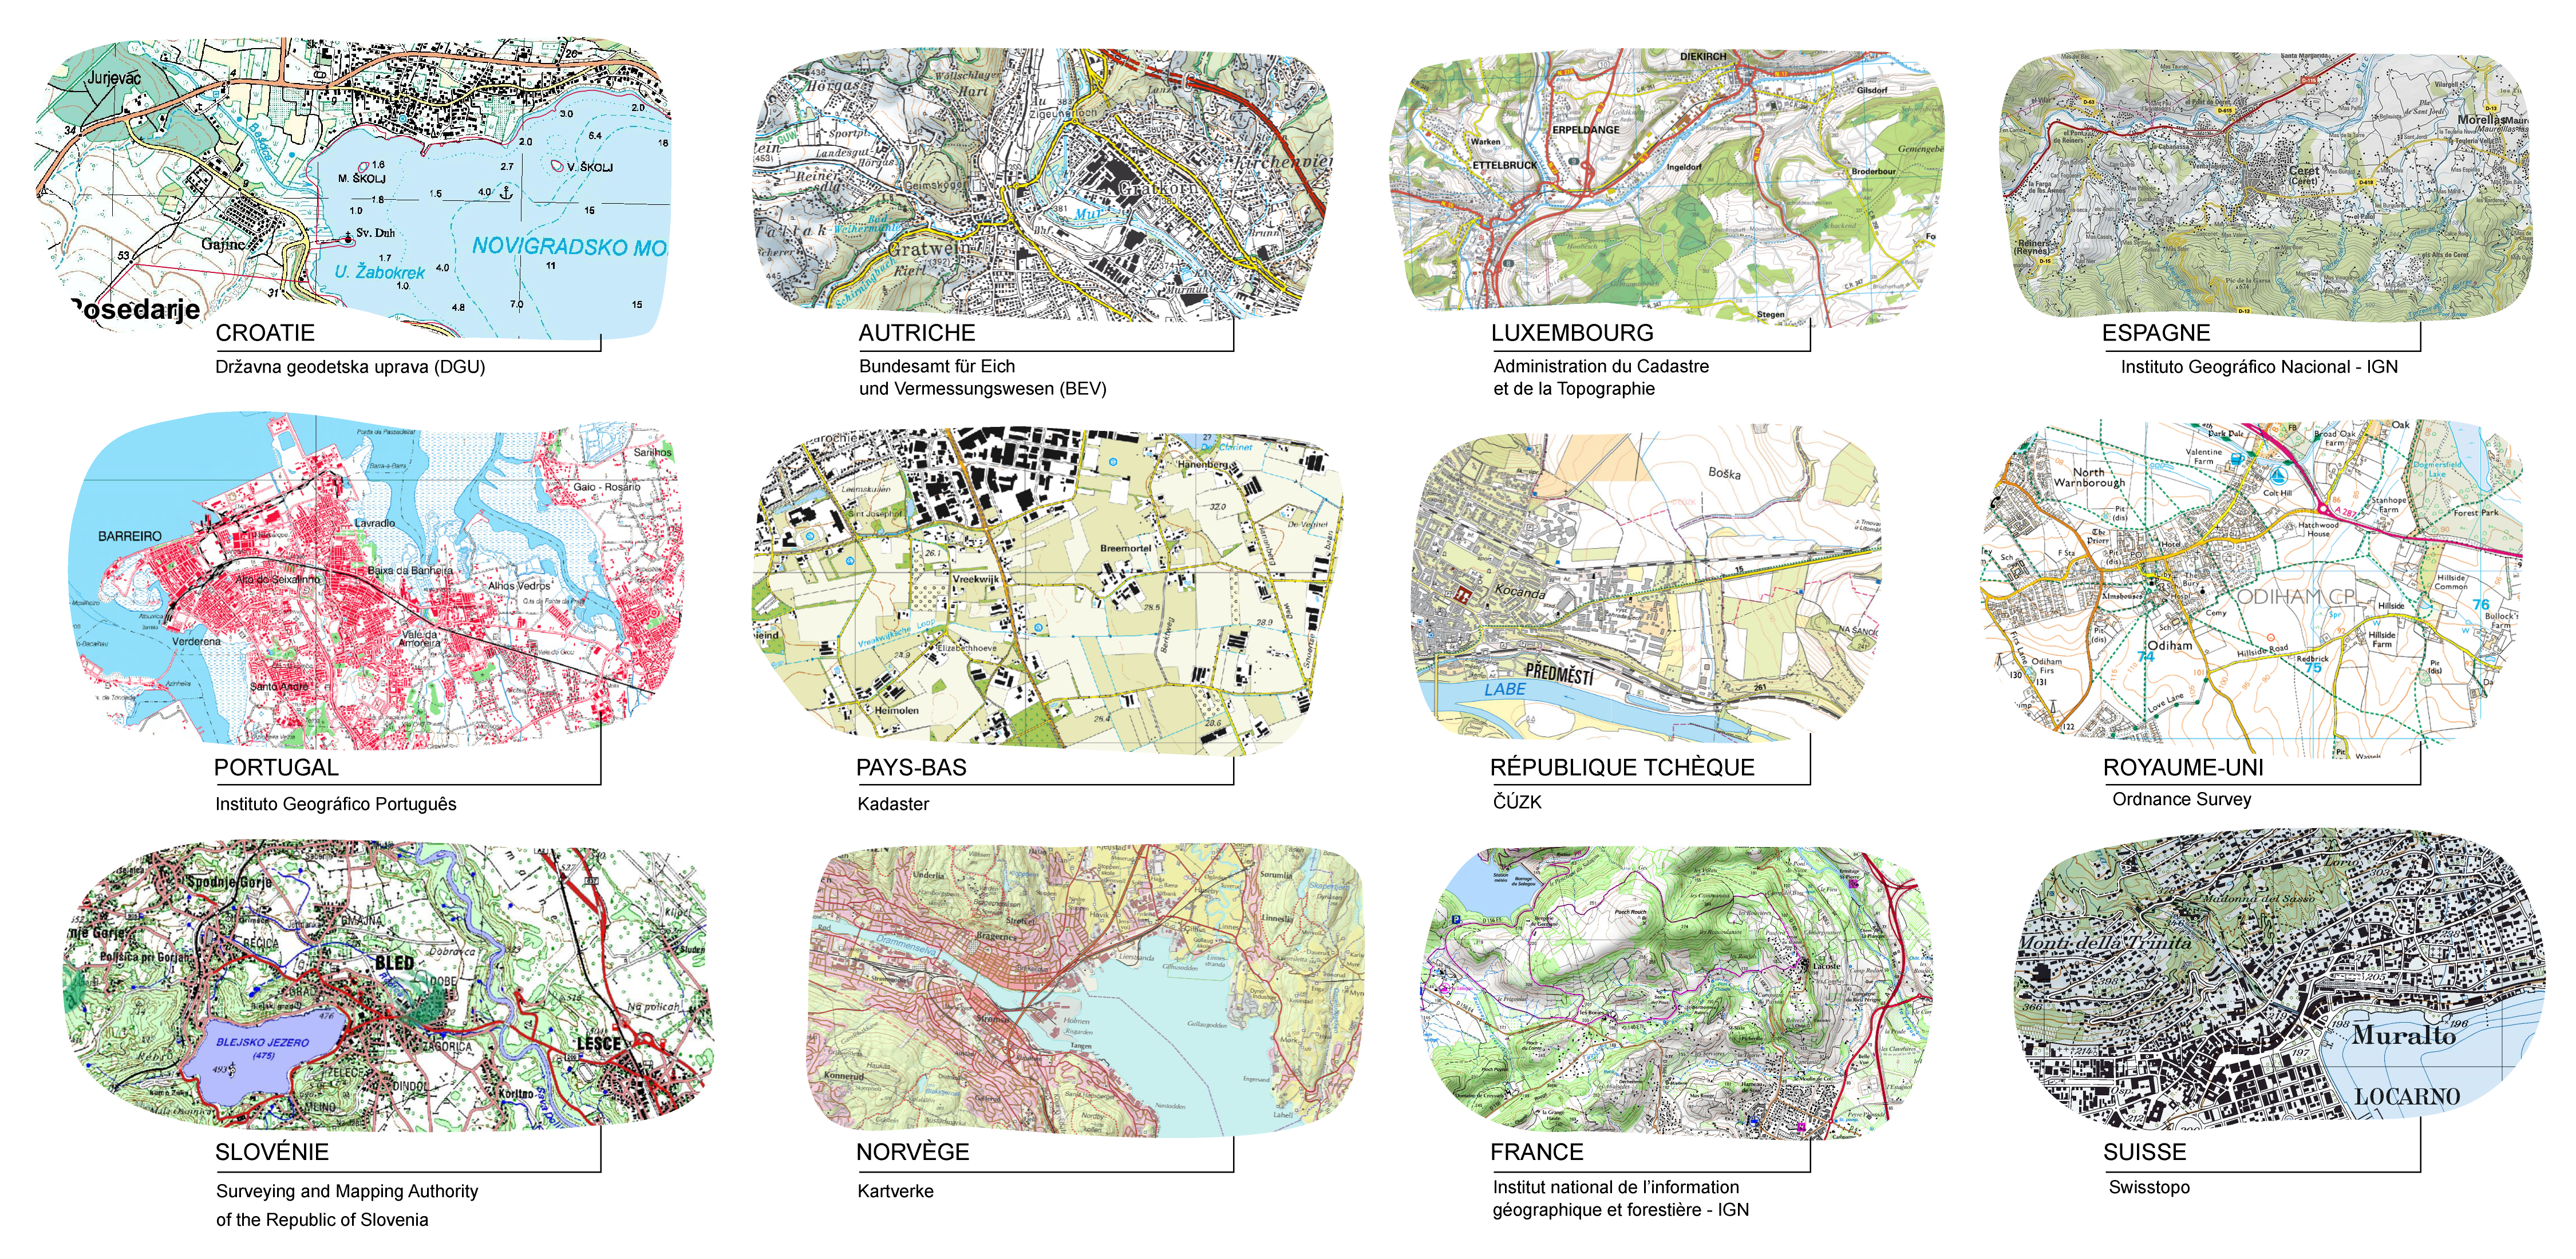 Exemples de cartes topographiques au 1:25 000 produites par différentes agences de cartographie européennes. 